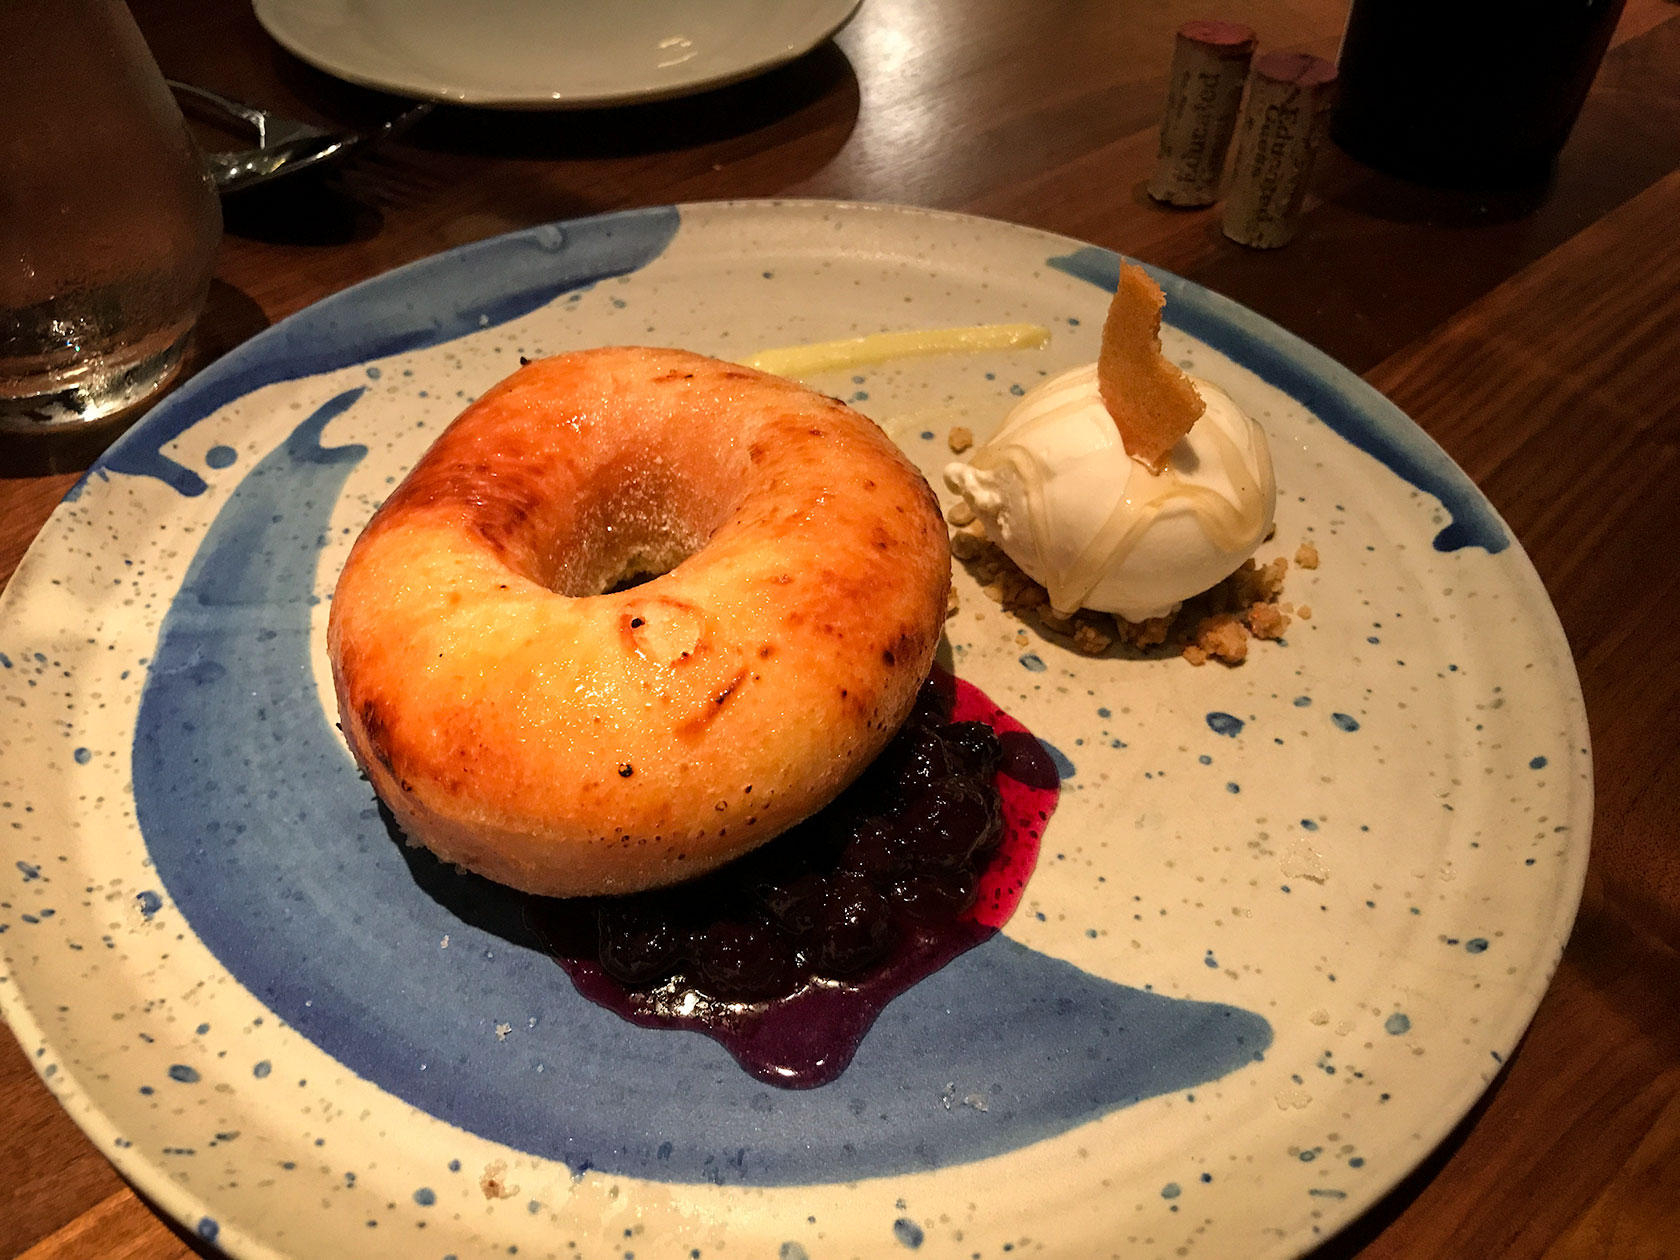 Brioche donut dessert at Fixe restaurant in Austin, Texas